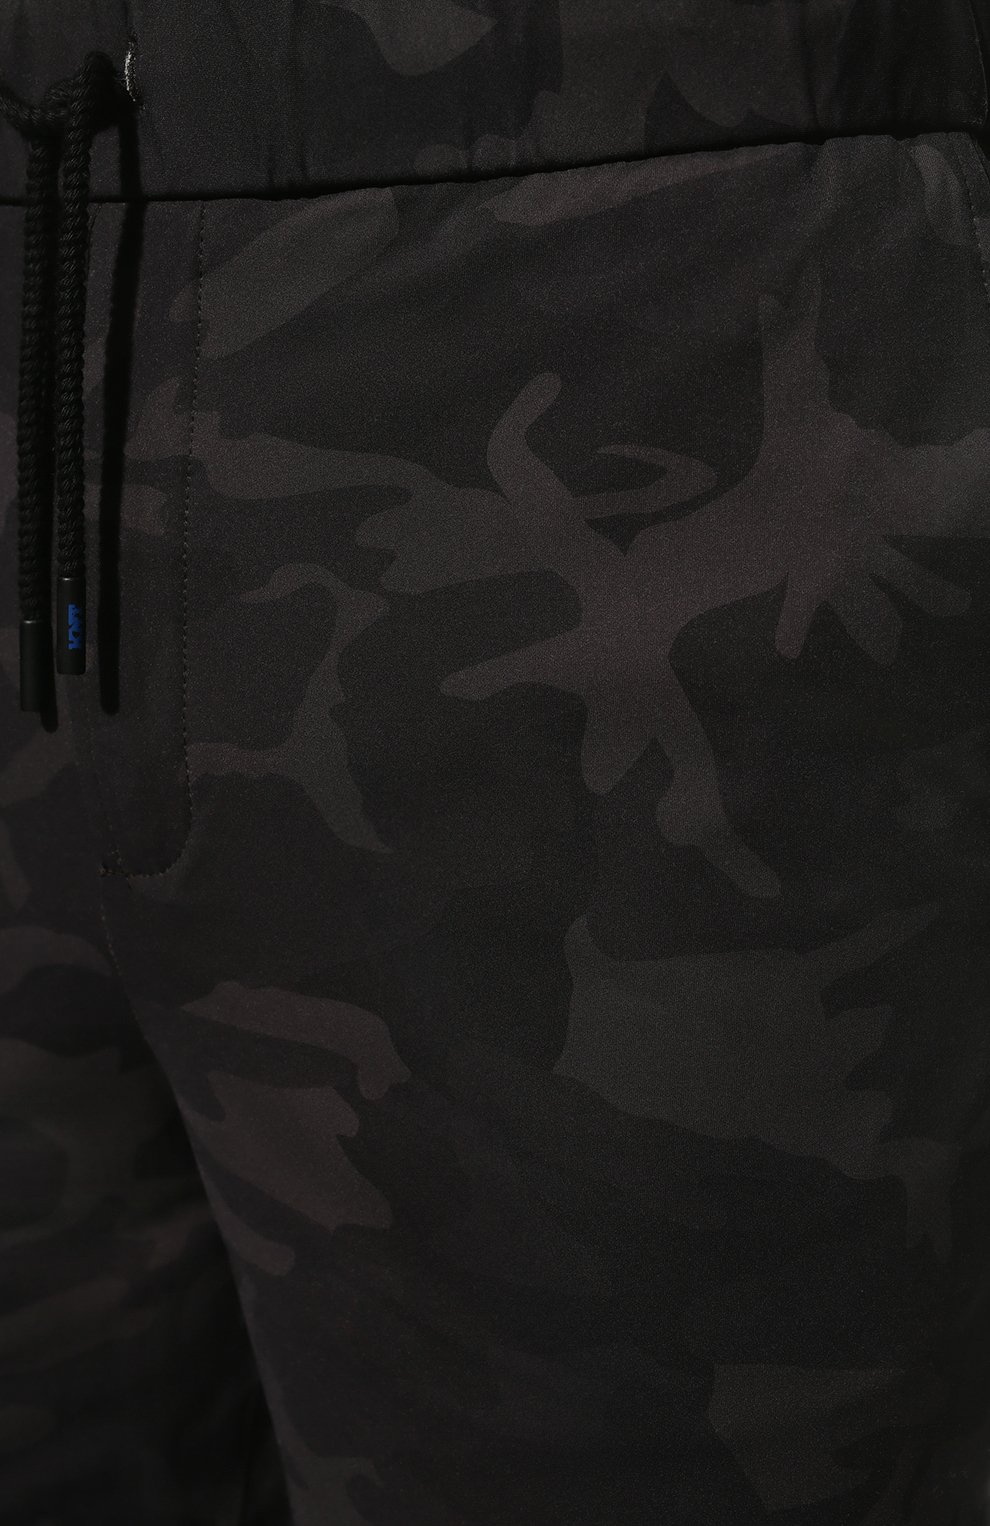 Мужские шорты KNT темно-серого цвета, арт. UPKN013X0744A | Фото 5 (Длина Шорты М: До колена; Принт: Без принта; Случай: Повседневный; Материал внешний: Синтетический материал; Стили: Милитари)